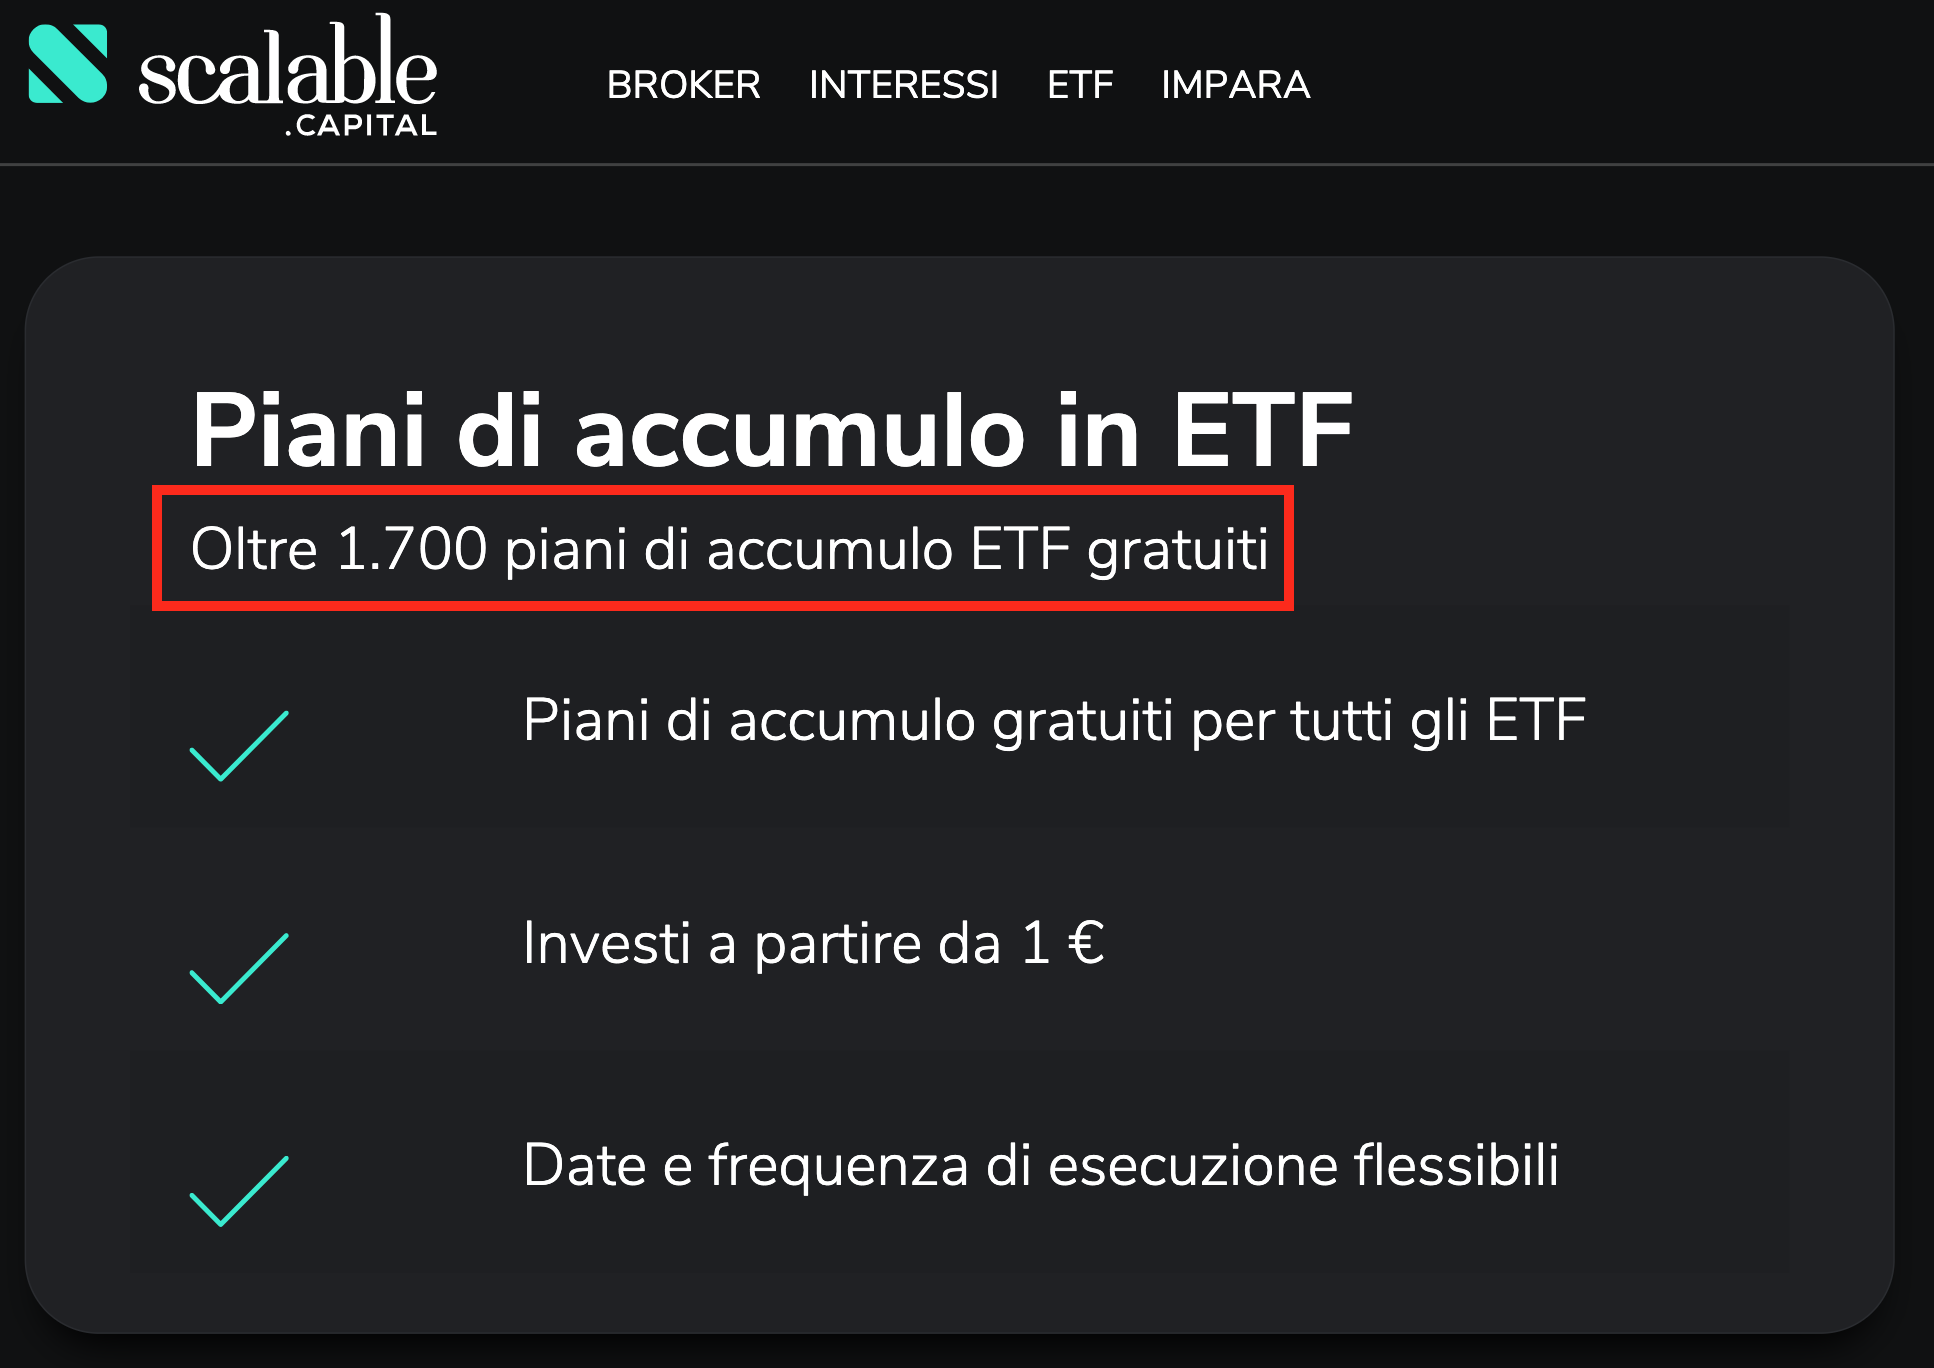 Scalable Capital offre oltre 1700 piani di accumulo gratuiti su ETF